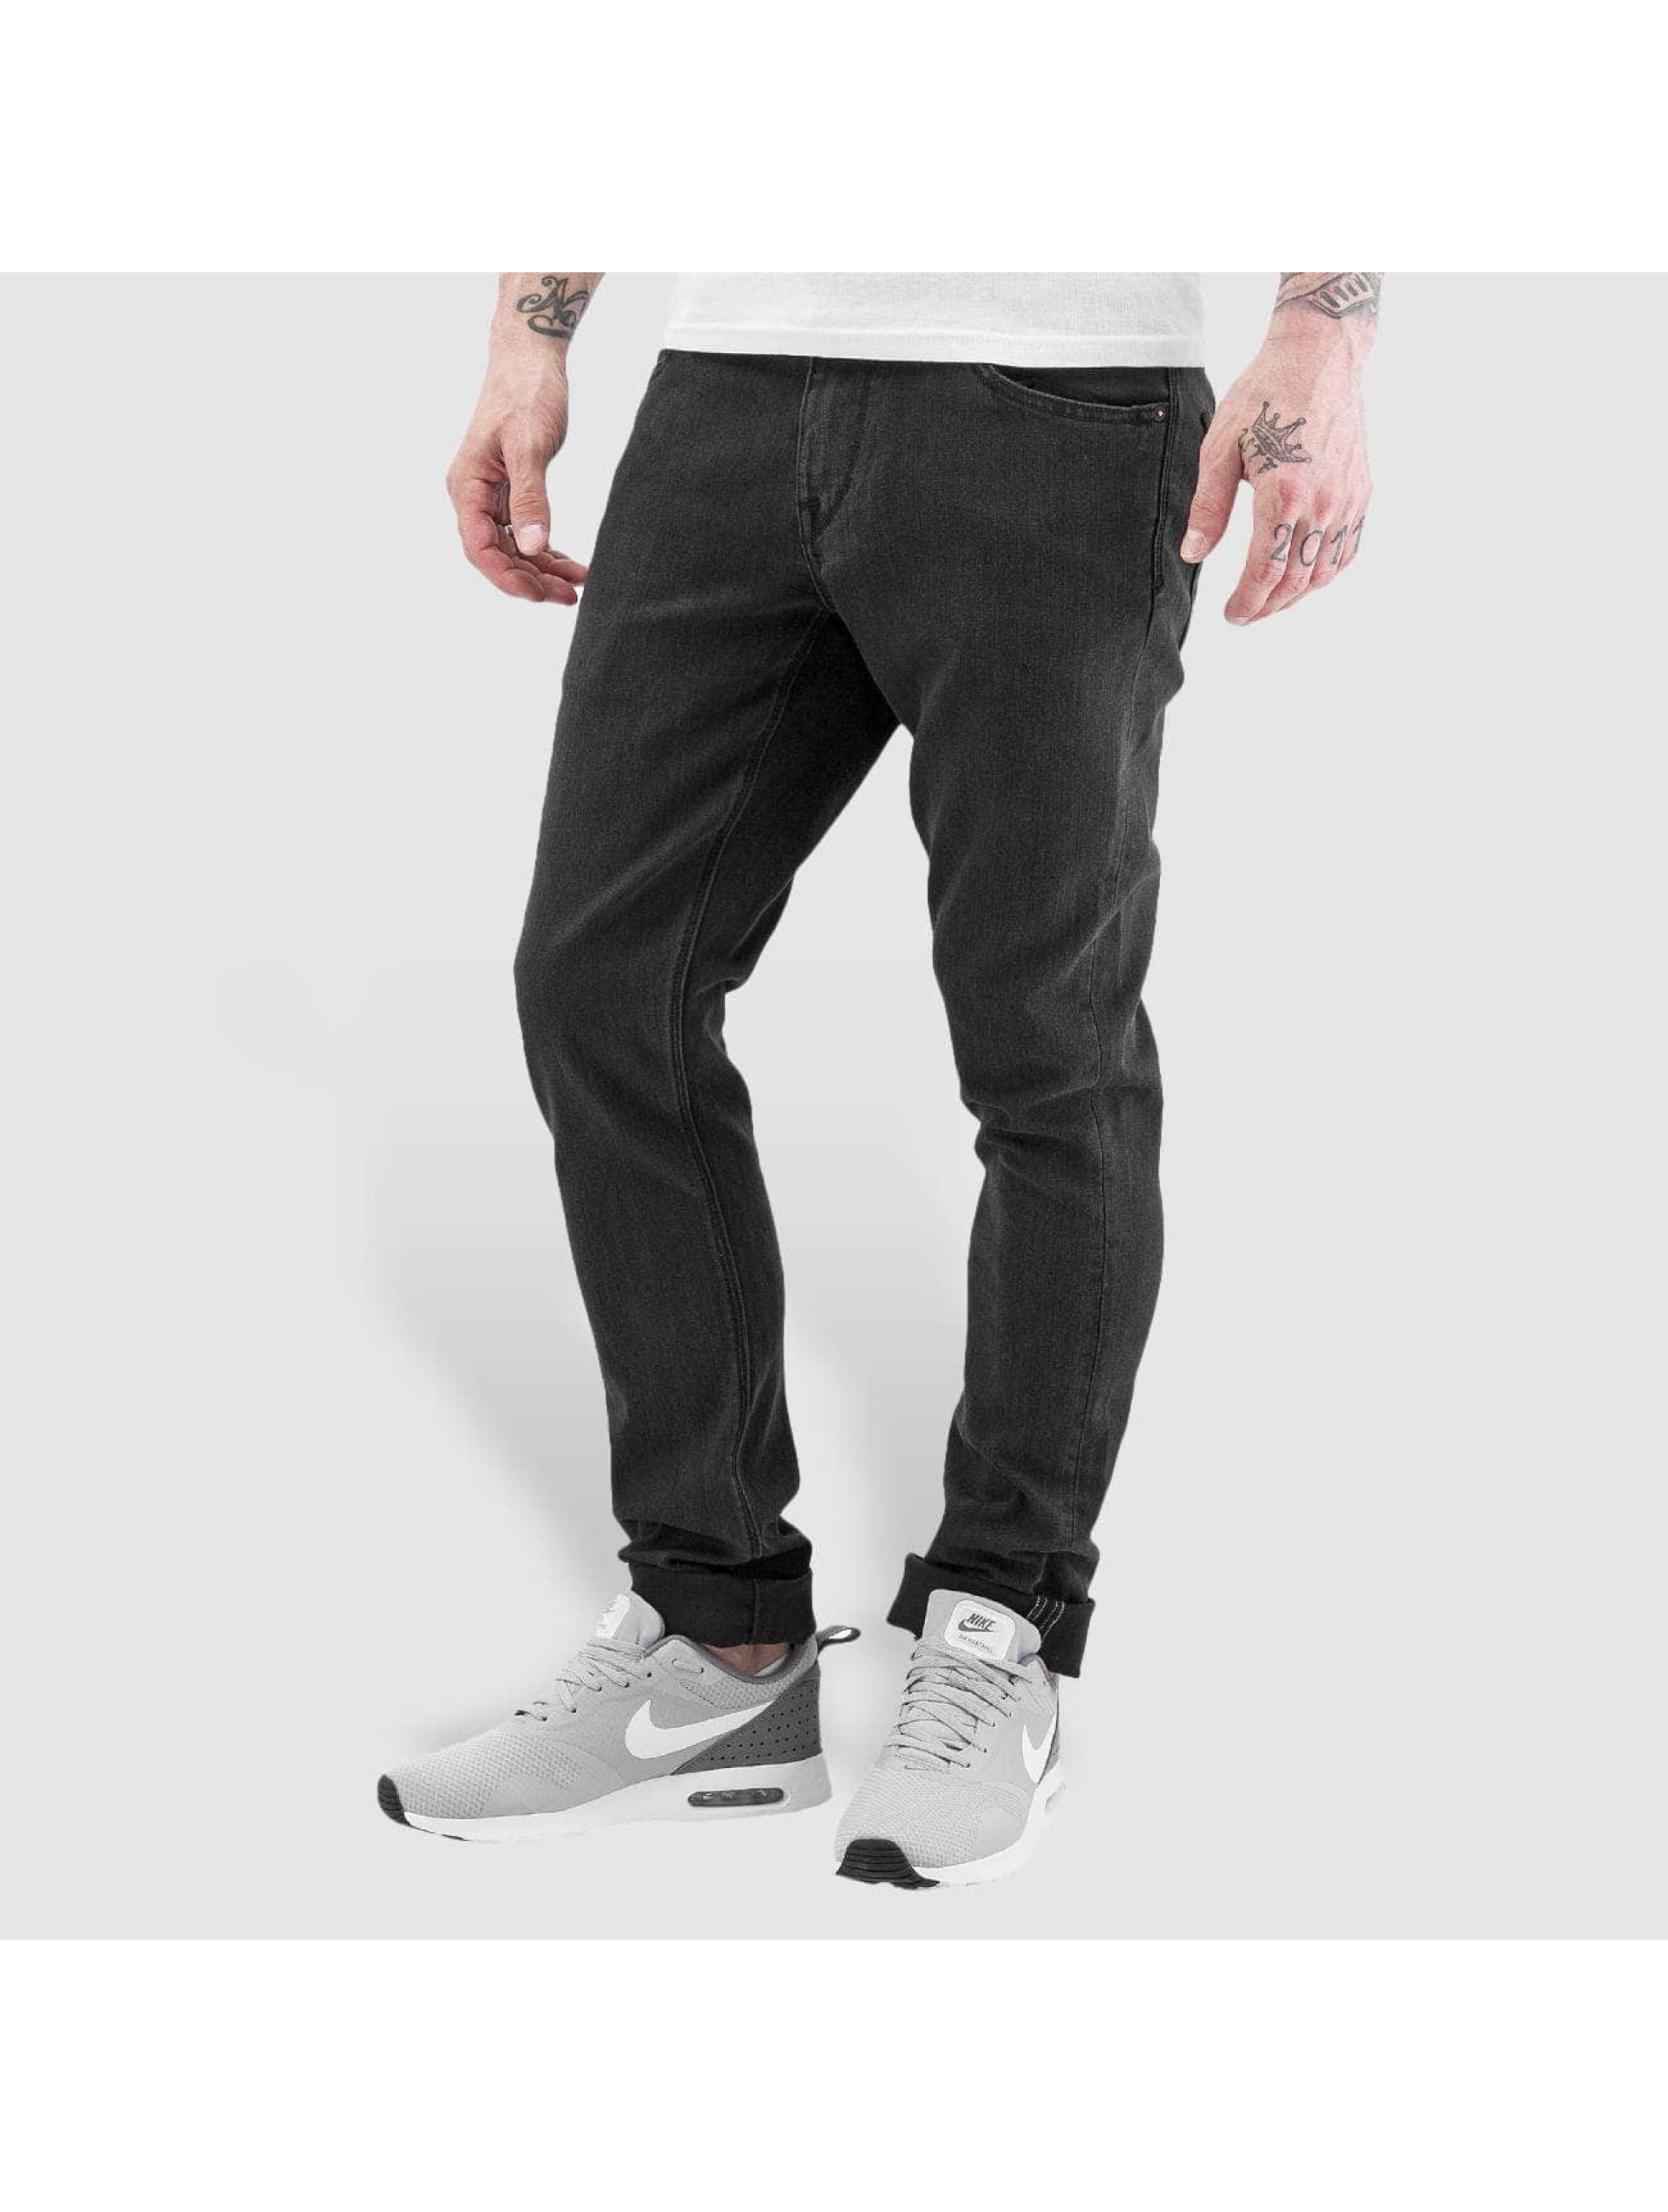 Straight Fit Jeans 2x4 Denim in schwarz